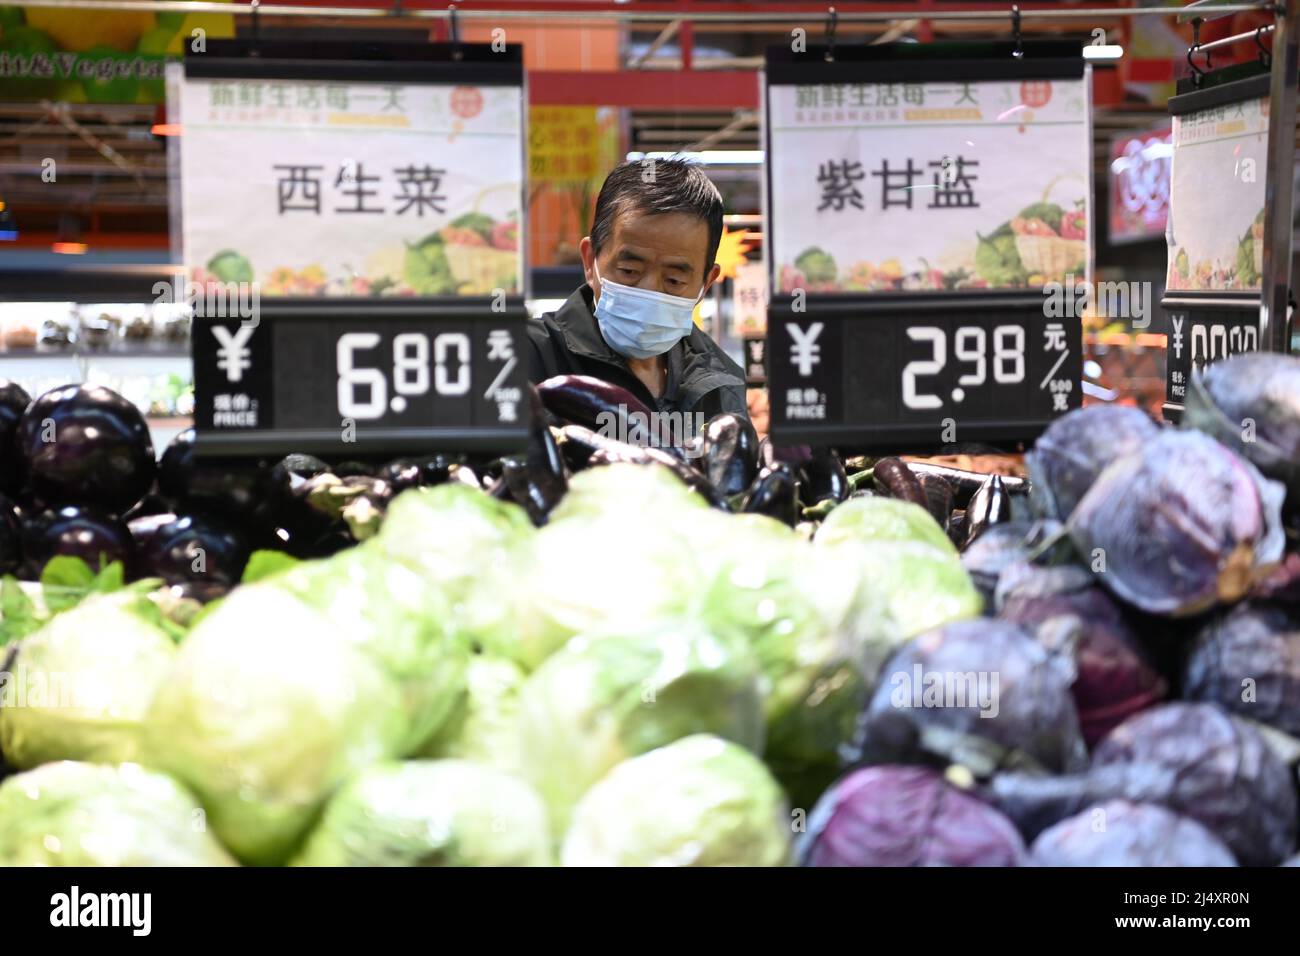 Xining, Chinas Provinz Qinghai. 18. April 2022. Ein Bürgerladen in einem Supermarkt in der Stadt Xining, nordwestlich der chinesischen Provinz Qinghai, 18. April 2022. Die lokalen Behörden haben Maßnahmen ergriffen, um die Versorgung sicherzustellen, und in der Zwischenzeit haben sie Teams eingerichtet, um lebende Güter für die Bewohner der kontrollierten Gemeinden zu kaufen und zu verteilen, während das jüngste Wiederaufleben von COVID-19-Infektionen aufkommt. Quelle: Fan Peissen/Xinhua/Alamy Live News Stockfoto